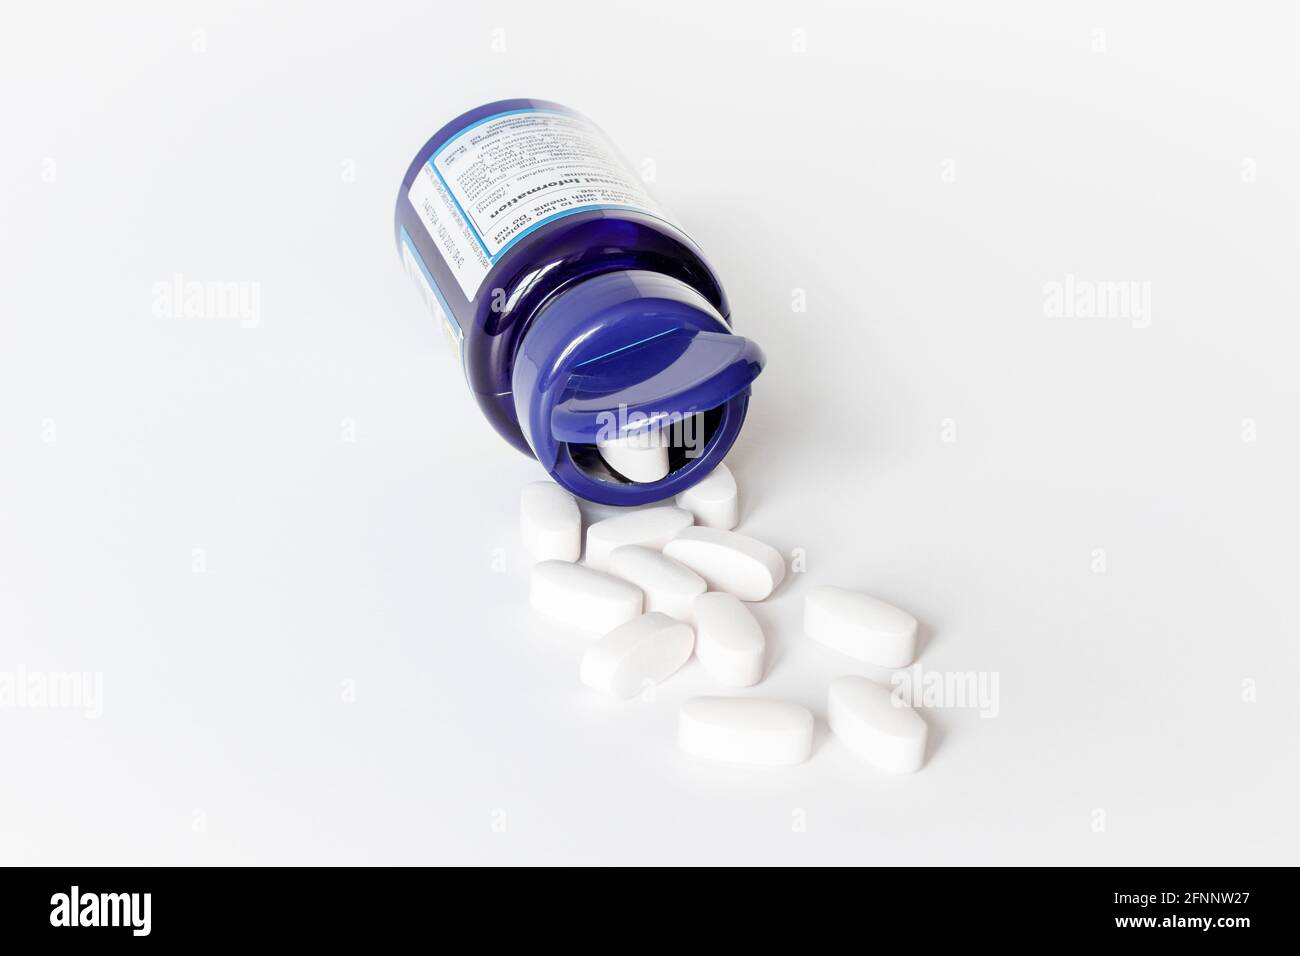 Les comprimés de sulfate de glucosamine blanc débordent d'un bleu ouvert conteneur en plastique sur fond blanc Banque D'Images